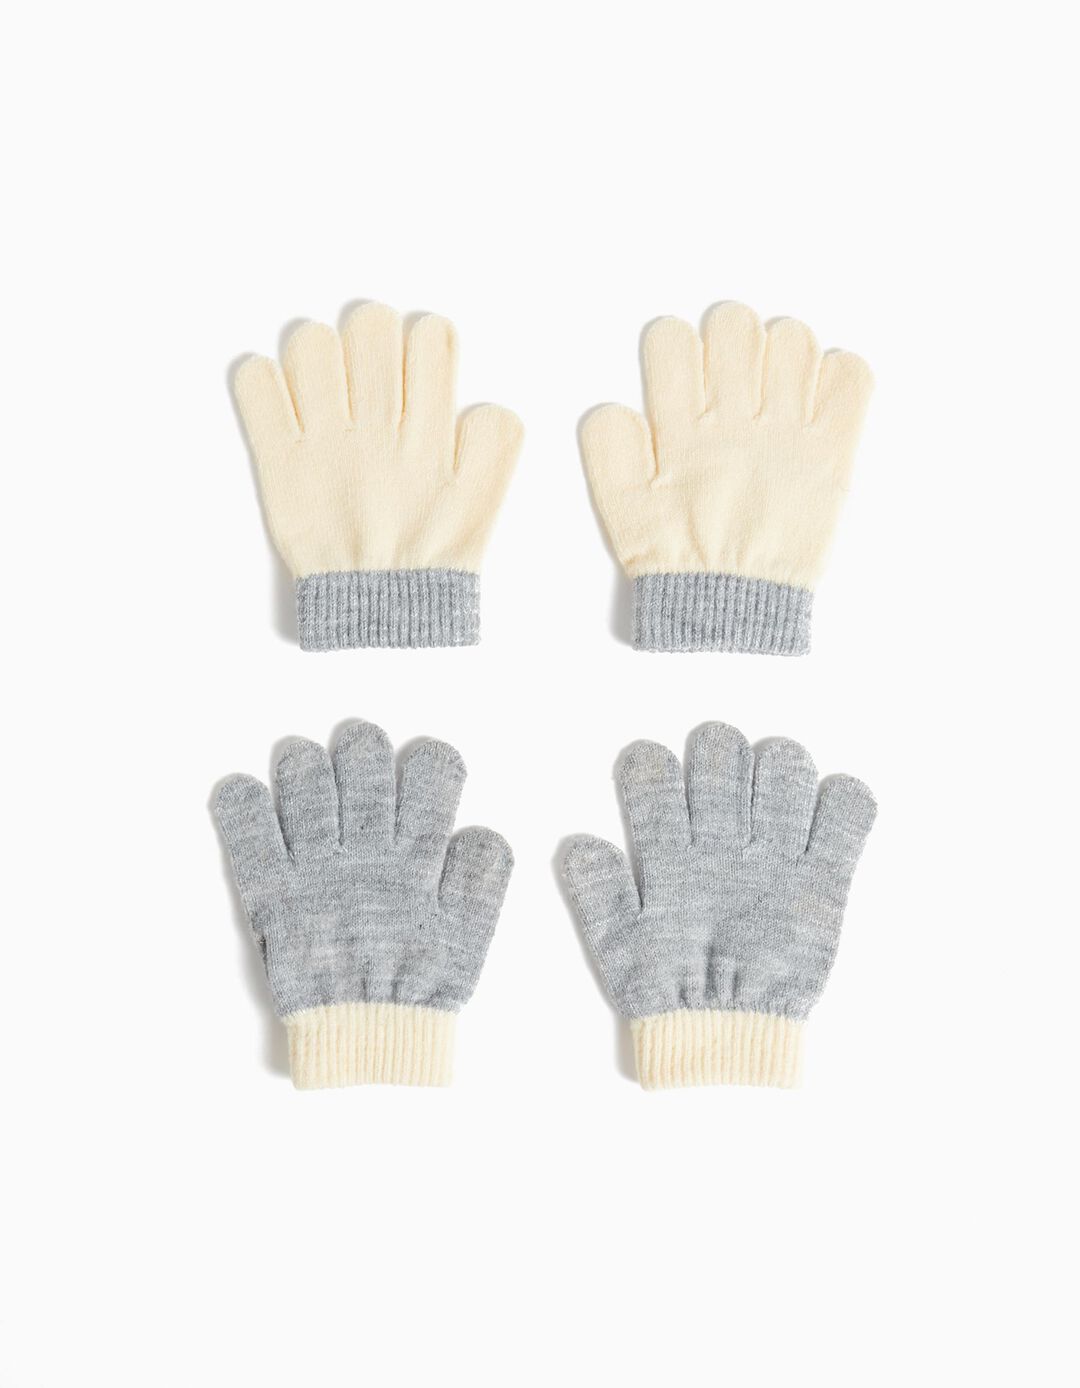 Pack 2 Pairs of Gloves, Girl, Beige/Light Gray